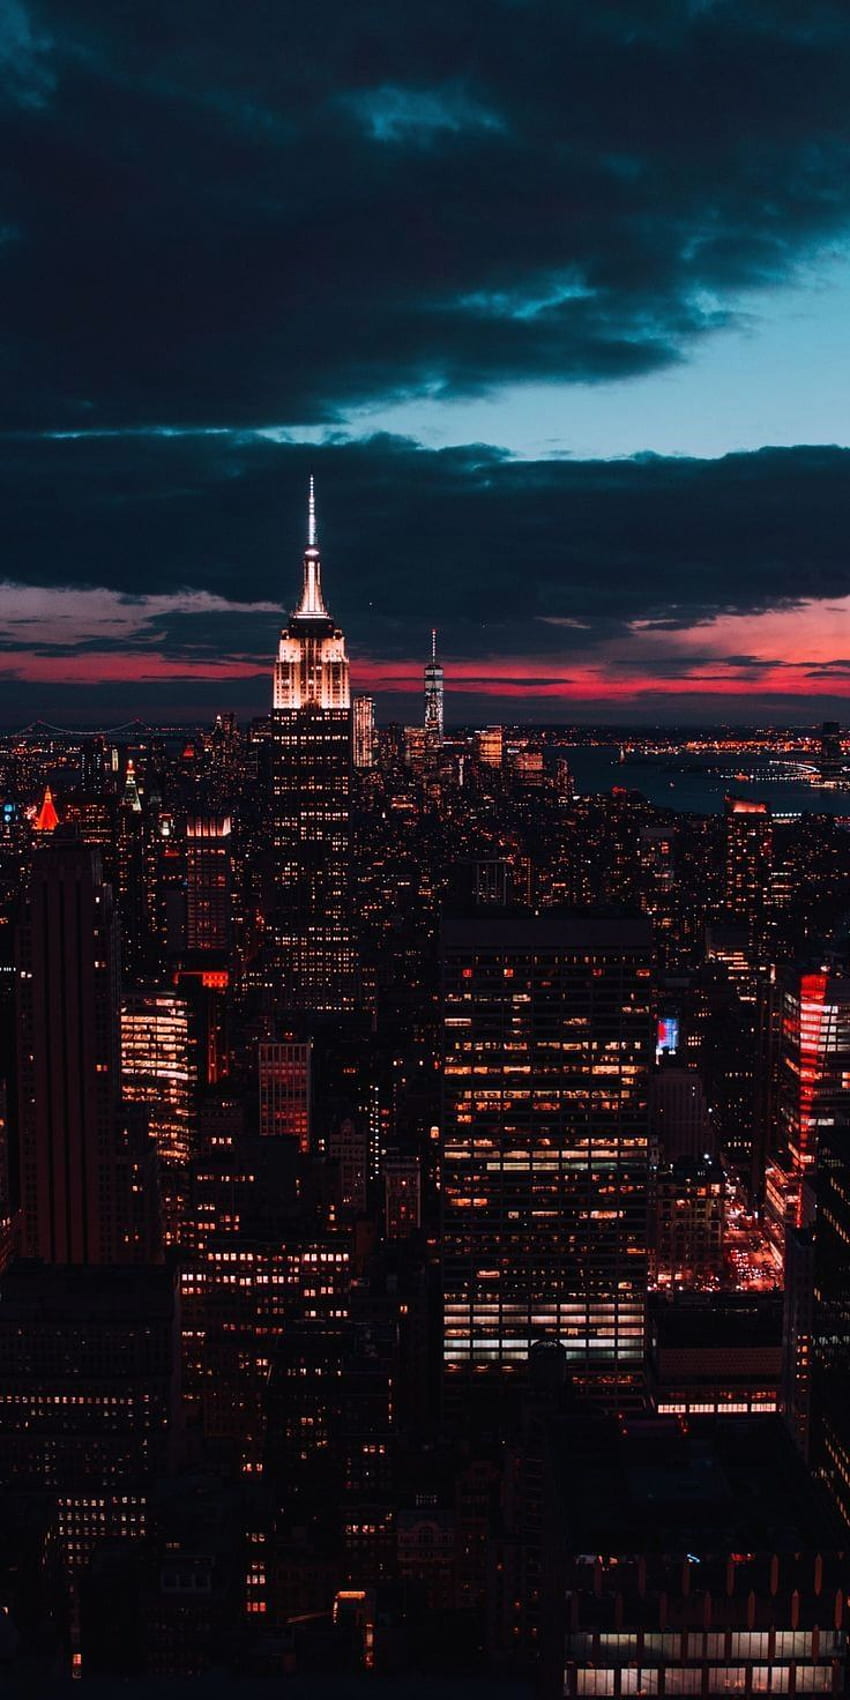 New York iPhone wallpaper - hình nền tuyệt đẹp dành cho những ai yêu thích thành phố New York với tầm nhìn thú vị đến từ chiếc smartphone của bạn. Hãy xem hình liên quan để khám phá những con đường sáng lấp lánh, đếm xem có bao nhiêu cao ốc chọc trời, và cảm nhận được không khí sống động của đại đô thị này! 